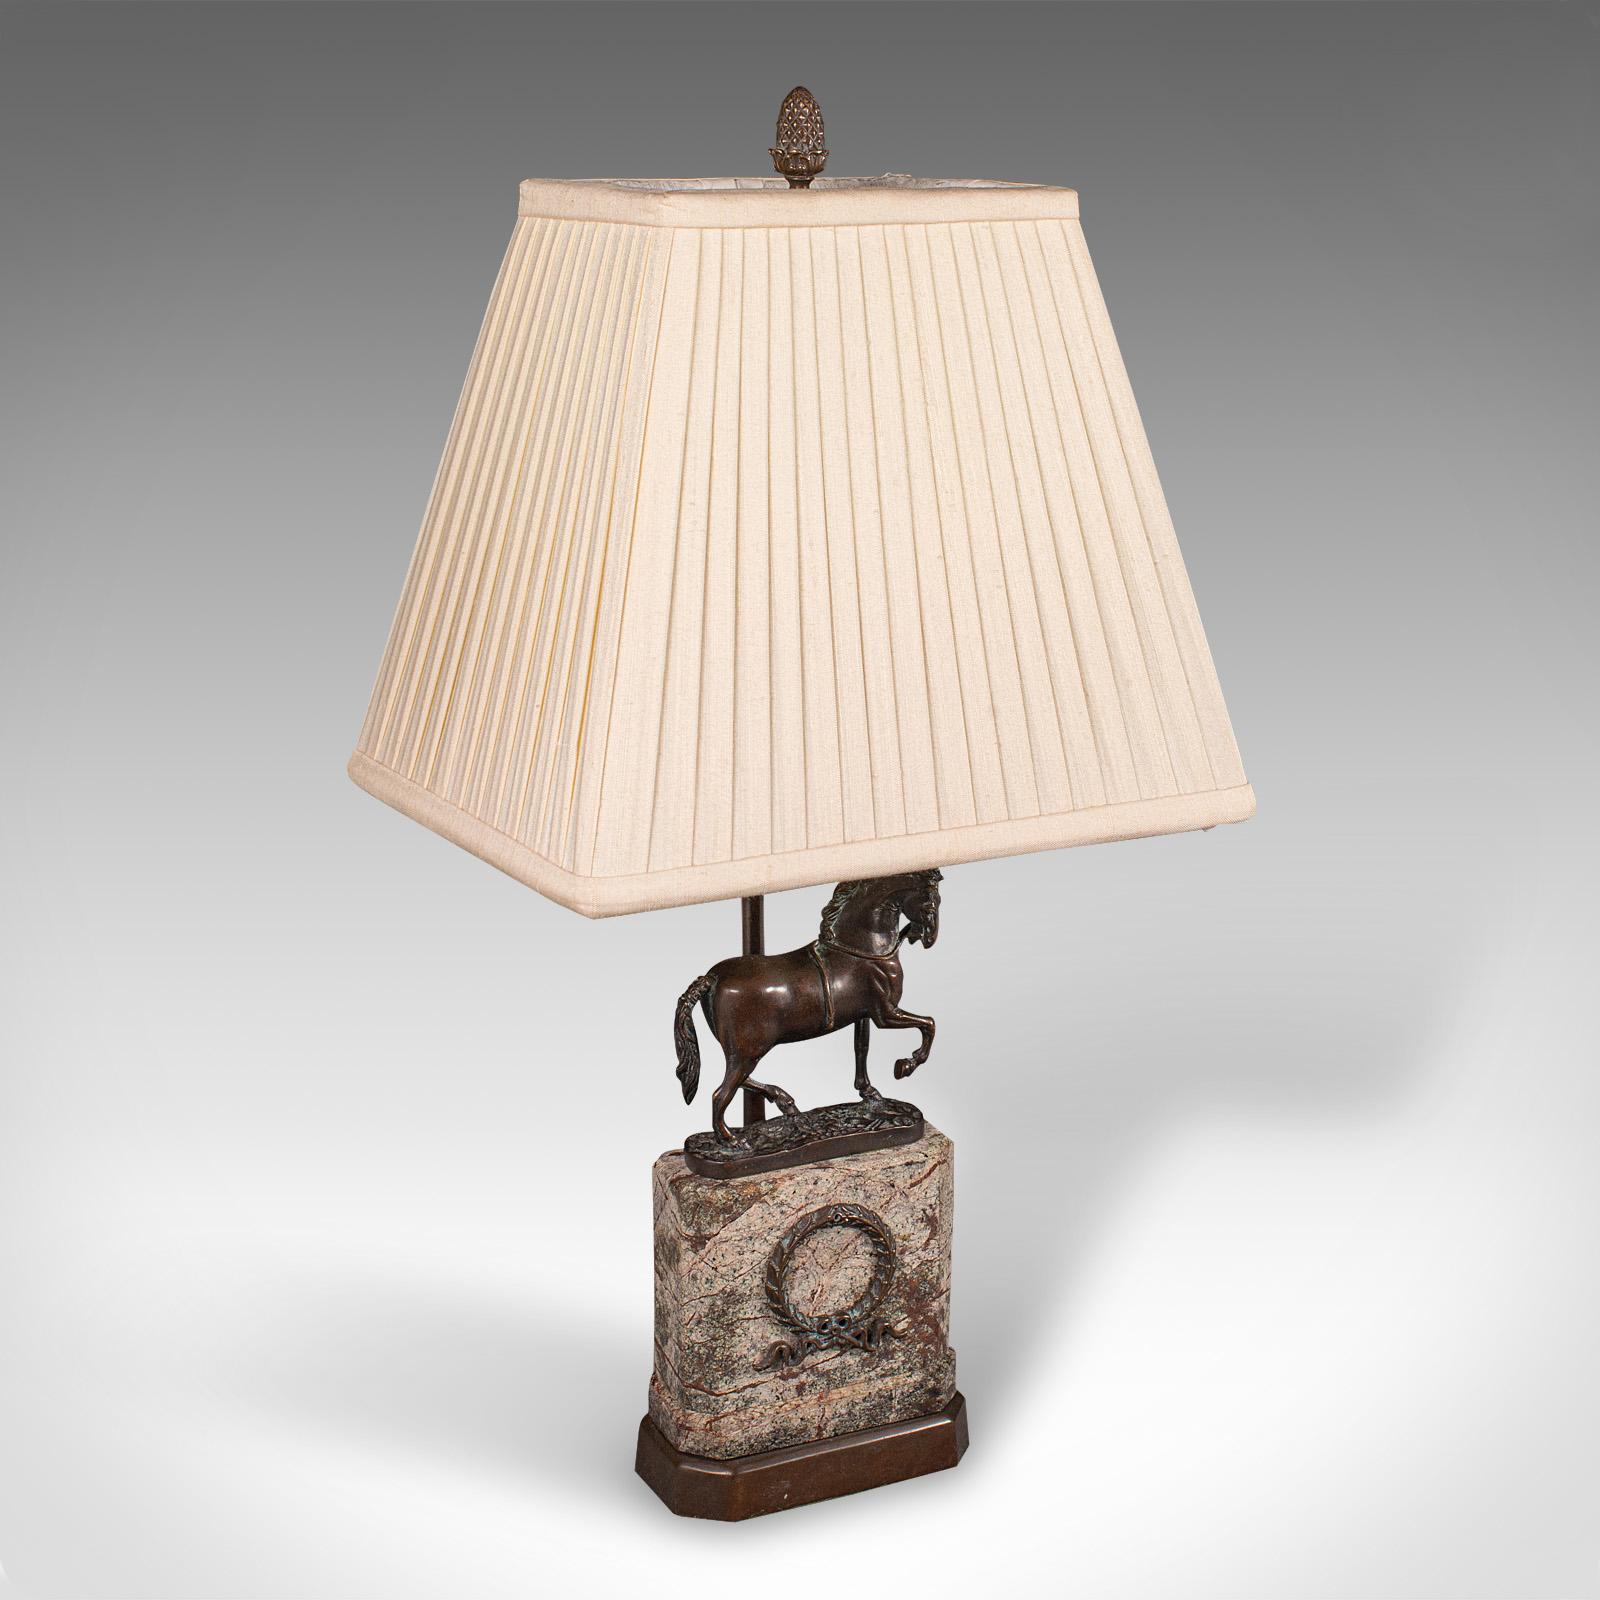 Il s'agit d'une lampe de table équine vintage. Lampe décorative anglaise en bronze et granit, datant de la fin du 20e siècle, vers 1970.

Une fascinante figure de cheval ajoute un charme équestre à cette lampe
Présente une patine d'usage désirable